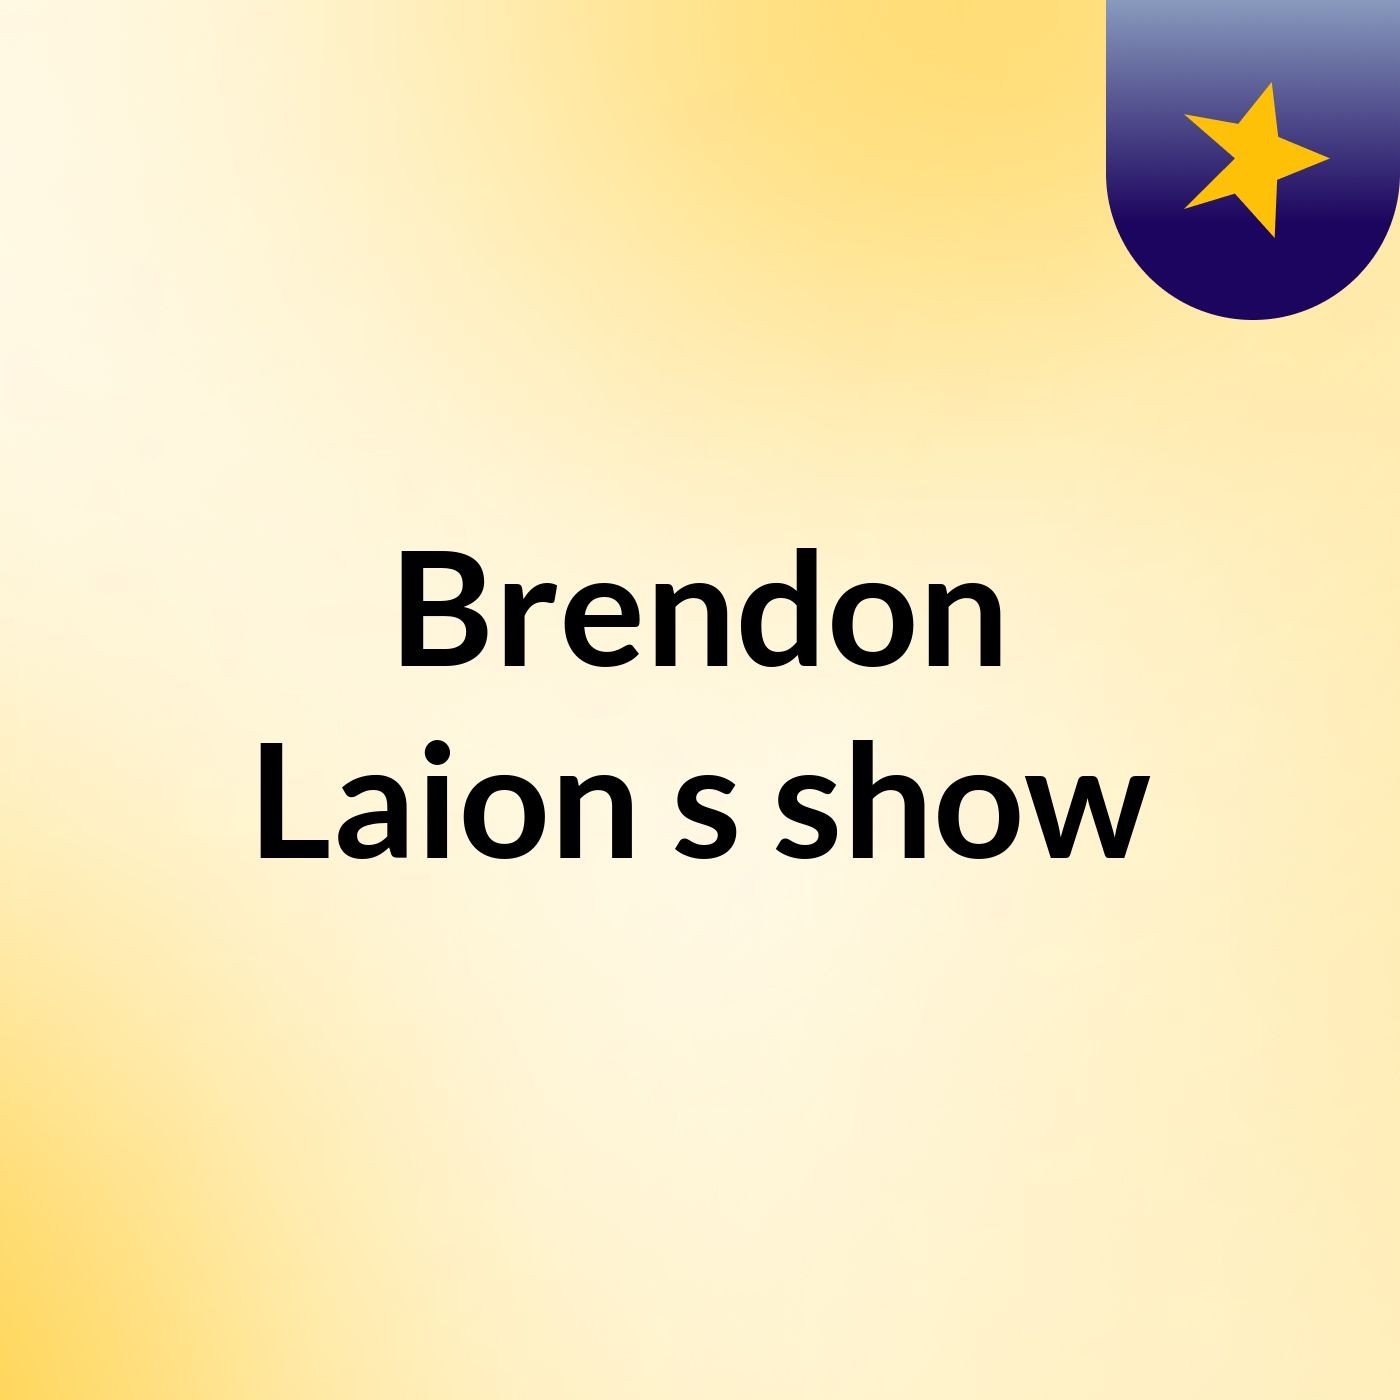 Brendon Laion's show